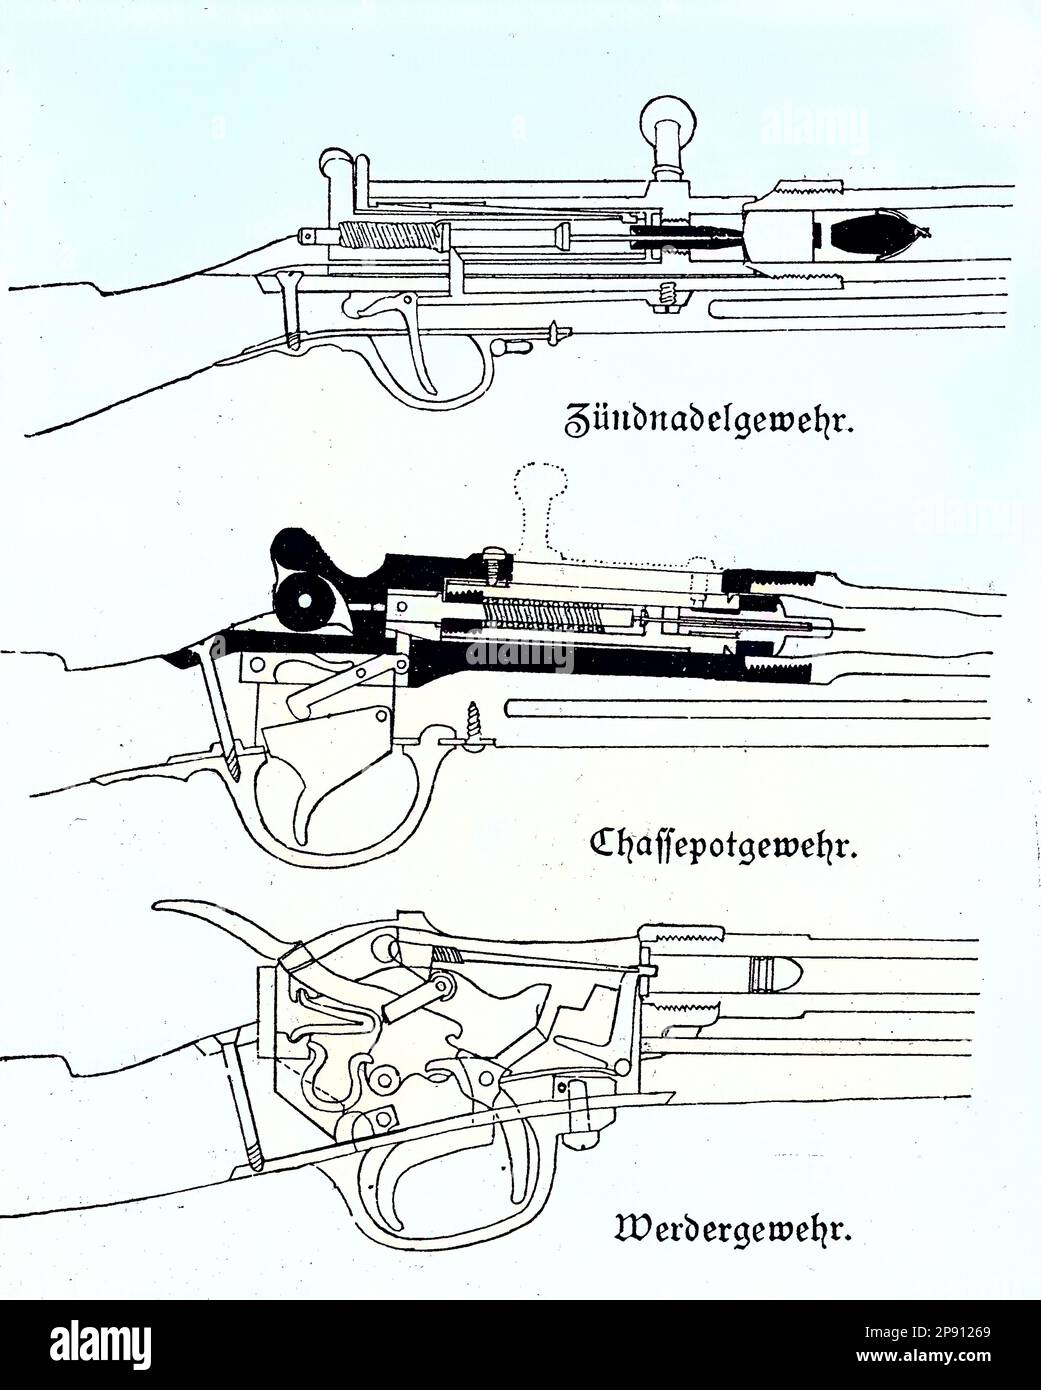 Waffen im deutsch-französischen Krieg, Das yse-Nadelgewehr, welches in militärisches Hinterladergewehr ist, berühmt als Hauptinfanteriewaffe der Preußen, die es 1841 als leichtes Perkussionsgewehr Modell 1841 in den Didigewell, 1841 ans. DAS Chassepot, offiziell bekannt als Fusil modèle 1866, était de l'ein Repetiergehr mit Hinterlader. DAS bayerische Werdergewehr M - 1869 war das erste deutsche Hinterladergehr mit einer Metallpatrone und einer Zentralzündung, situation aus der Zeit des Deutsch-Französischen Krieges oder Deutsch-Deutschen Krieges, Deutsch-Fran Banque D'Images